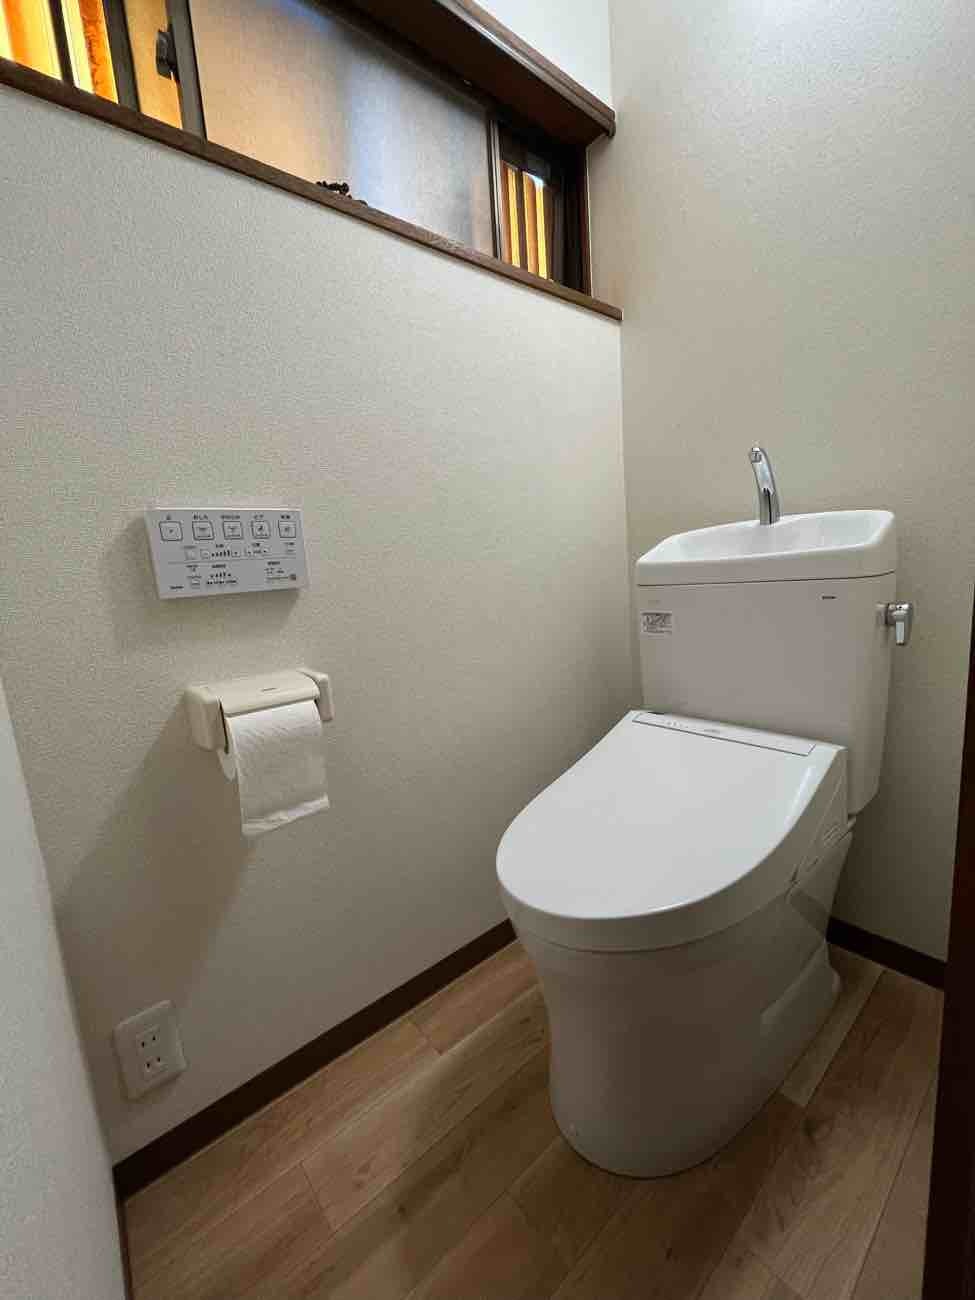 【埼玉県吉川市】K様邸トイレ交換工事が完了しました。TOTO ピュアレストQR 画像